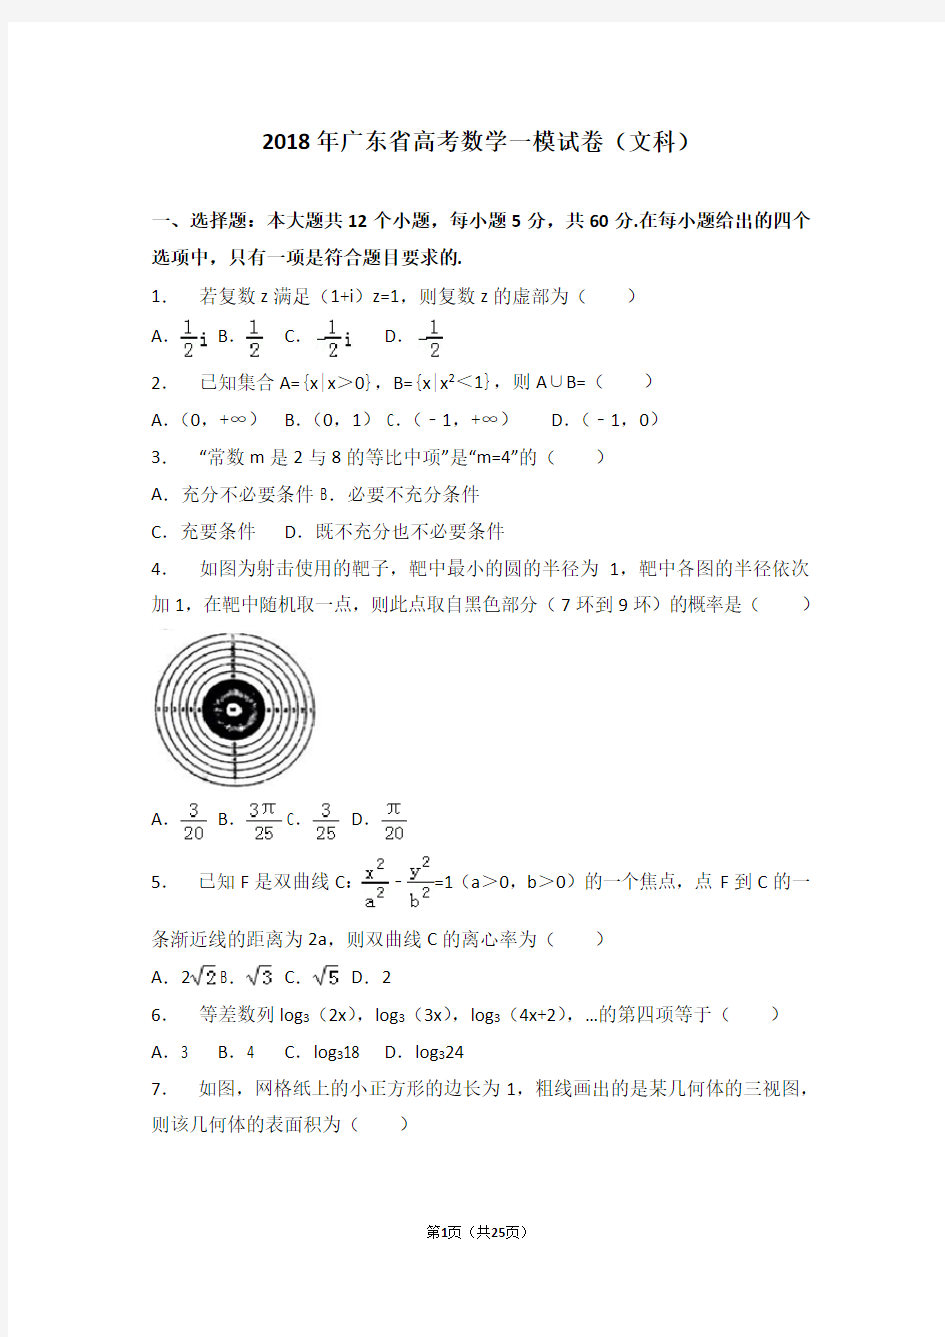 【省级联考】2018年广东省高考数学一模试卷(文科)